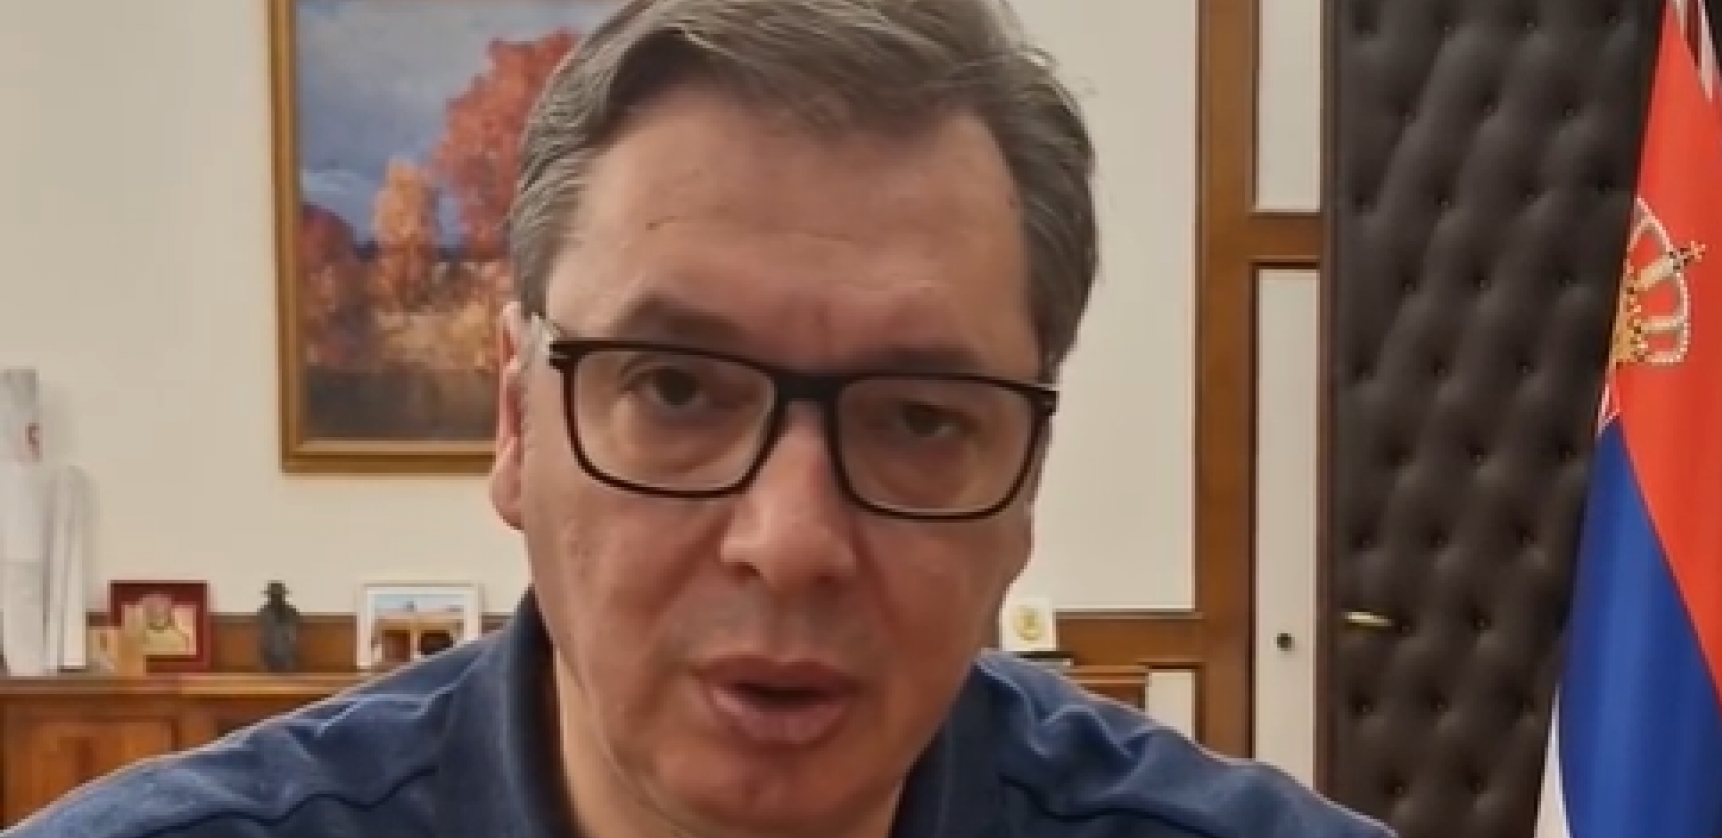 "DRŽAVA JE VAŽNIJA OD SVIH NAS" Predsednik Vučić poslao moćnu poruku građanima! (VIDEO)